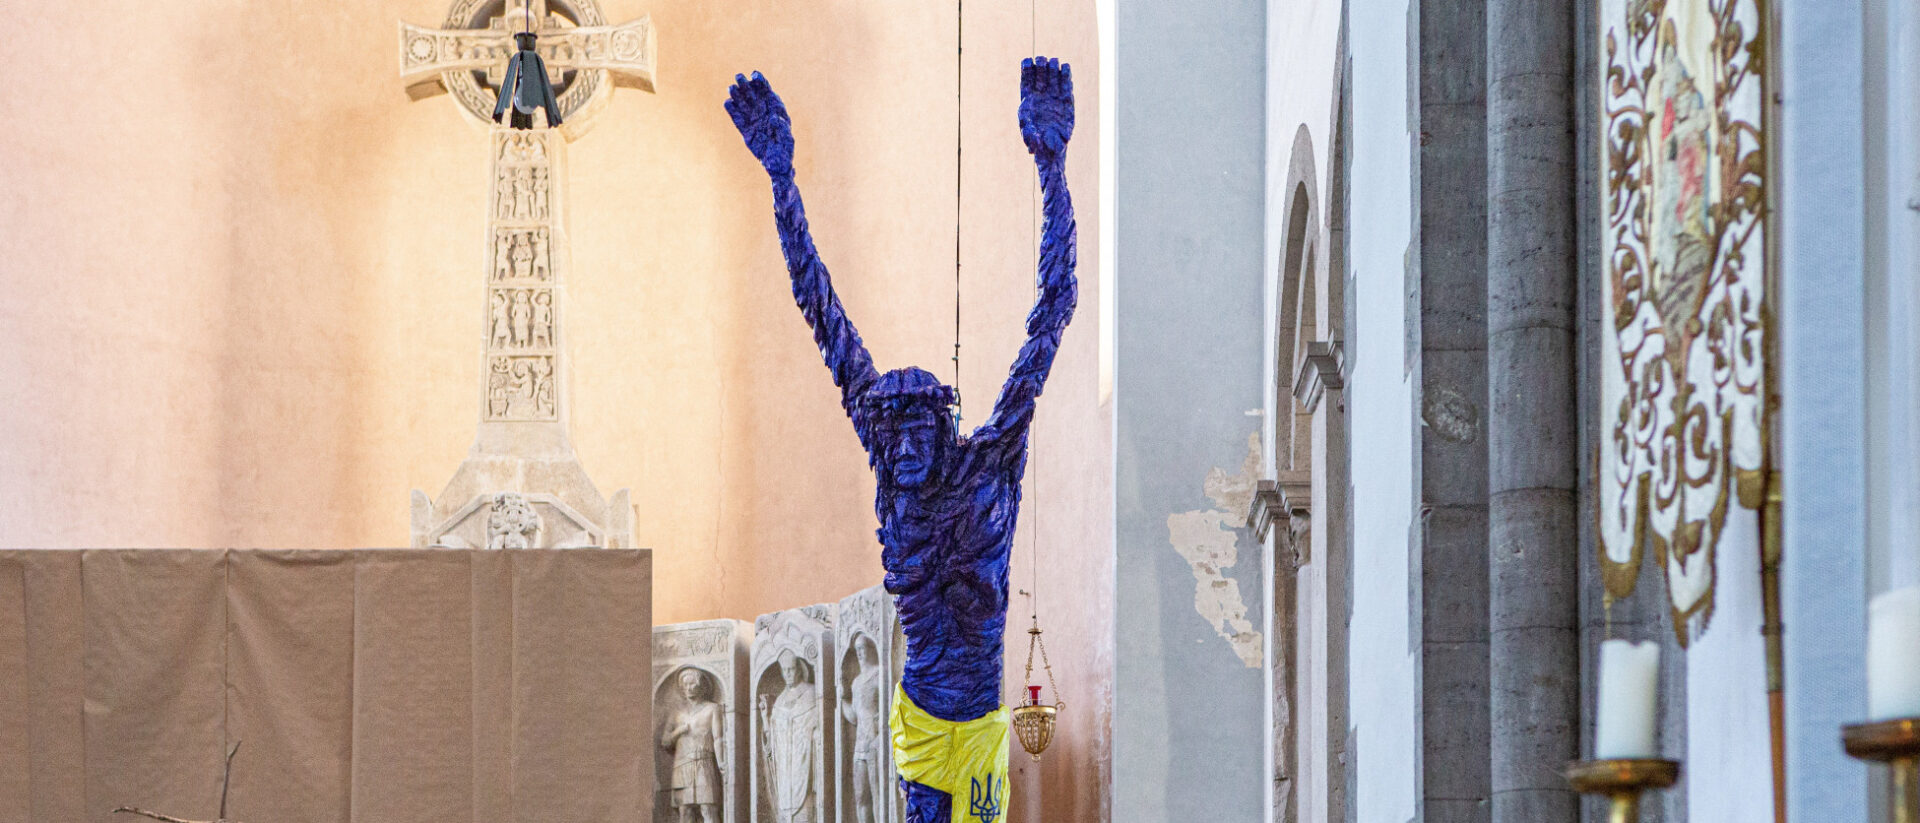 Eine überdimensionale Christusfigur in Blau mit gelbem Tuch des Künstlers Harry Seeholzer in München.